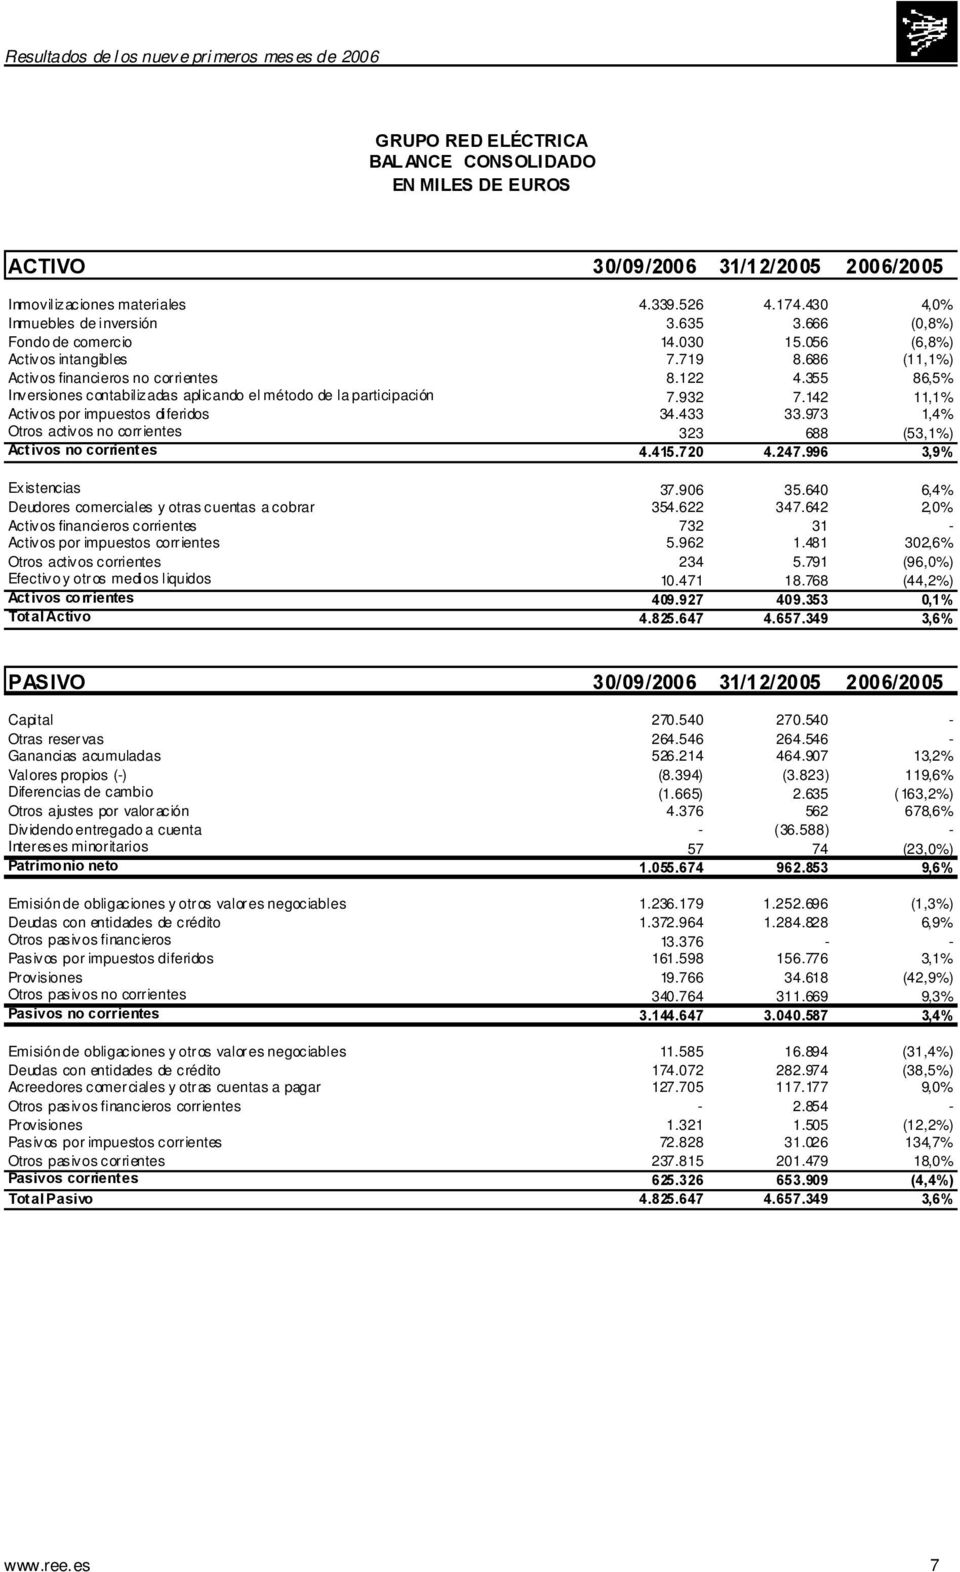 355 86,5% Inversiones contabilizadas aplicando el método de la participación 7.932 7.142 11,1% Activos por impuestos diferidos 34.433 33.